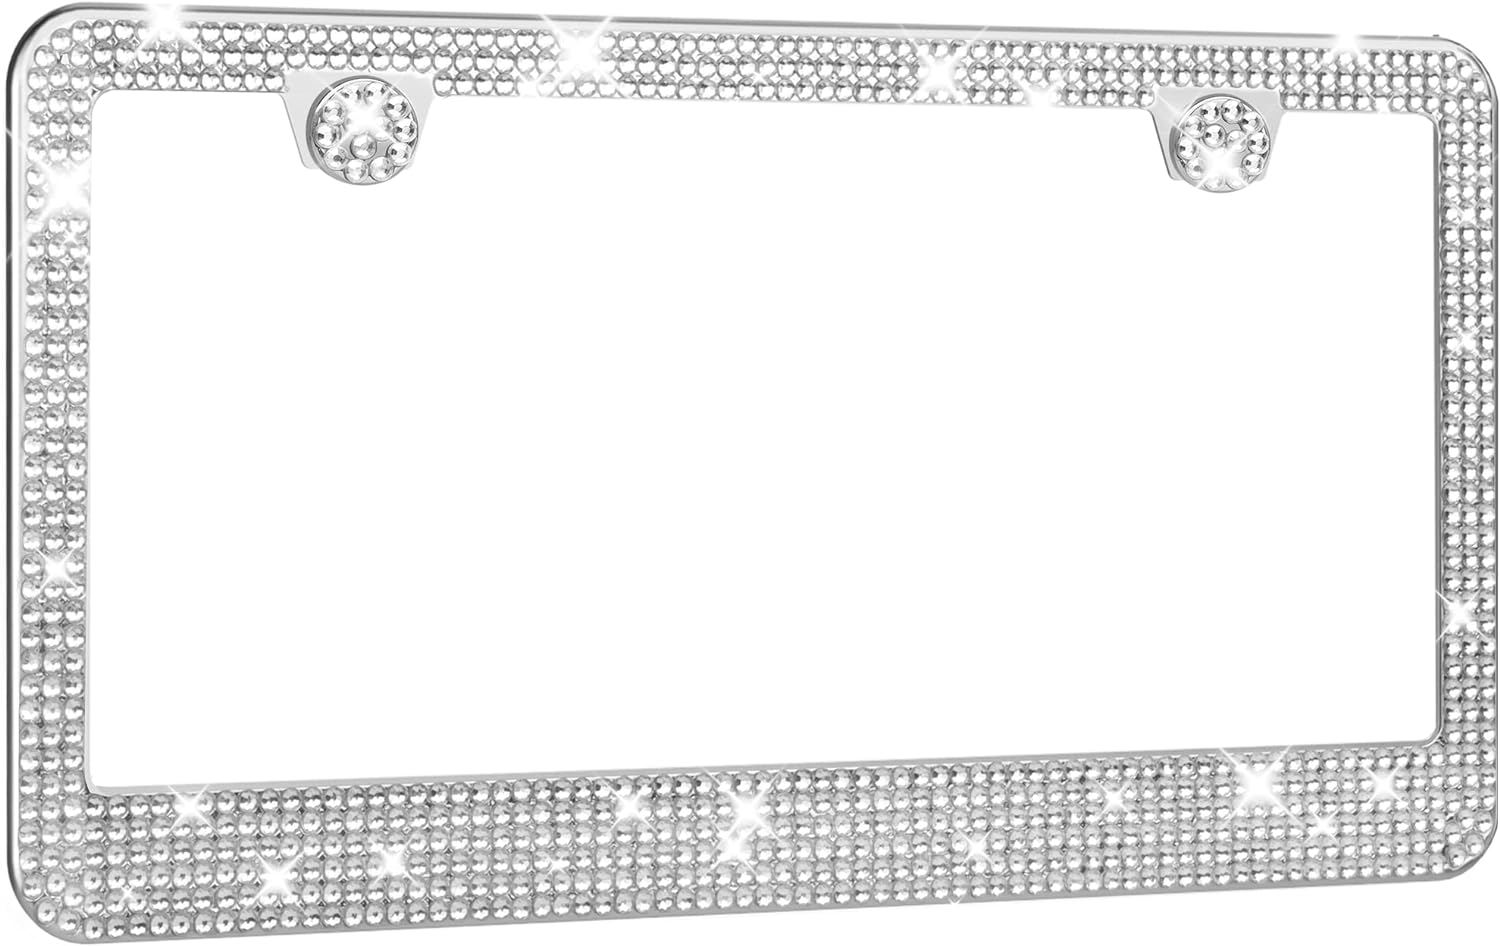 Aujen License Plate Frame - Lastingly Bling License Plate Frame - Sparkly Rhinestone License Plate Frame for Women - Stainless Steel